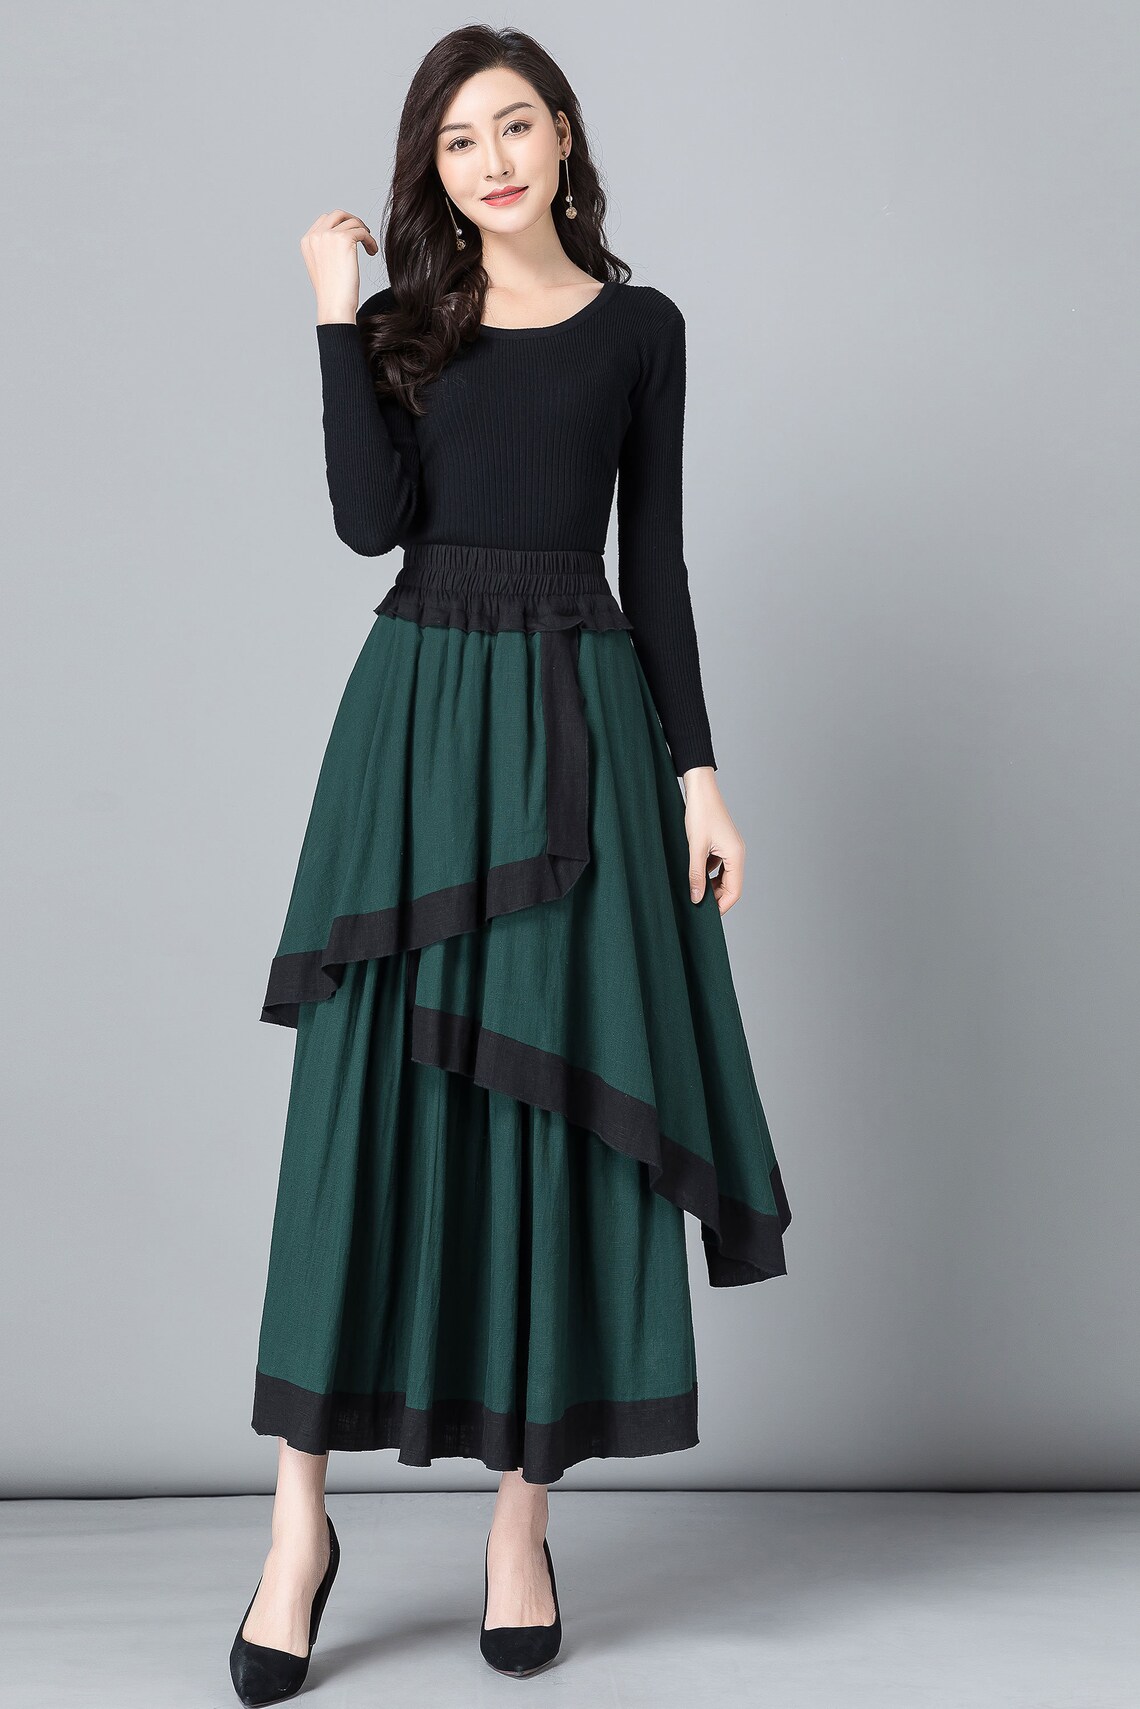 Linen skirt Green skirt Long skirt for women womens skirt | Etsy